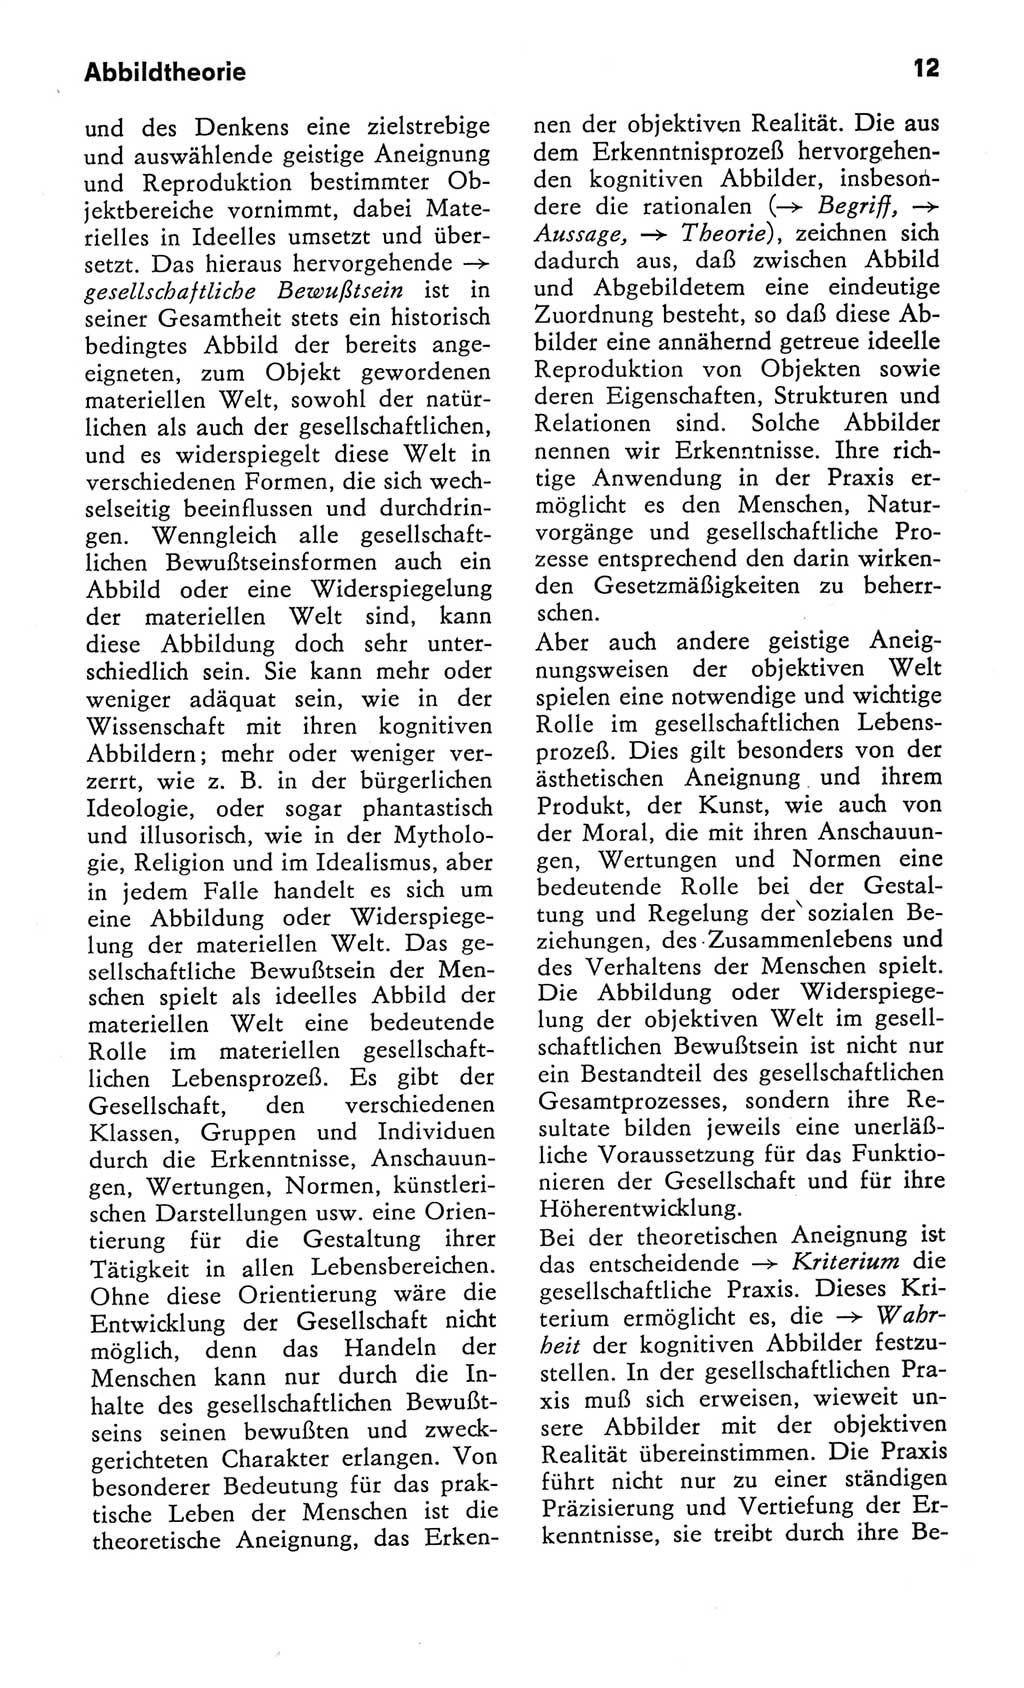 Kleines Wörterbuch der marxistisch-leninistischen Philosophie [Deutsche Demokratische Republik (DDR)] 1982, Seite 12 (Kl. Wb. ML Phil. DDR 1982, S. 12)